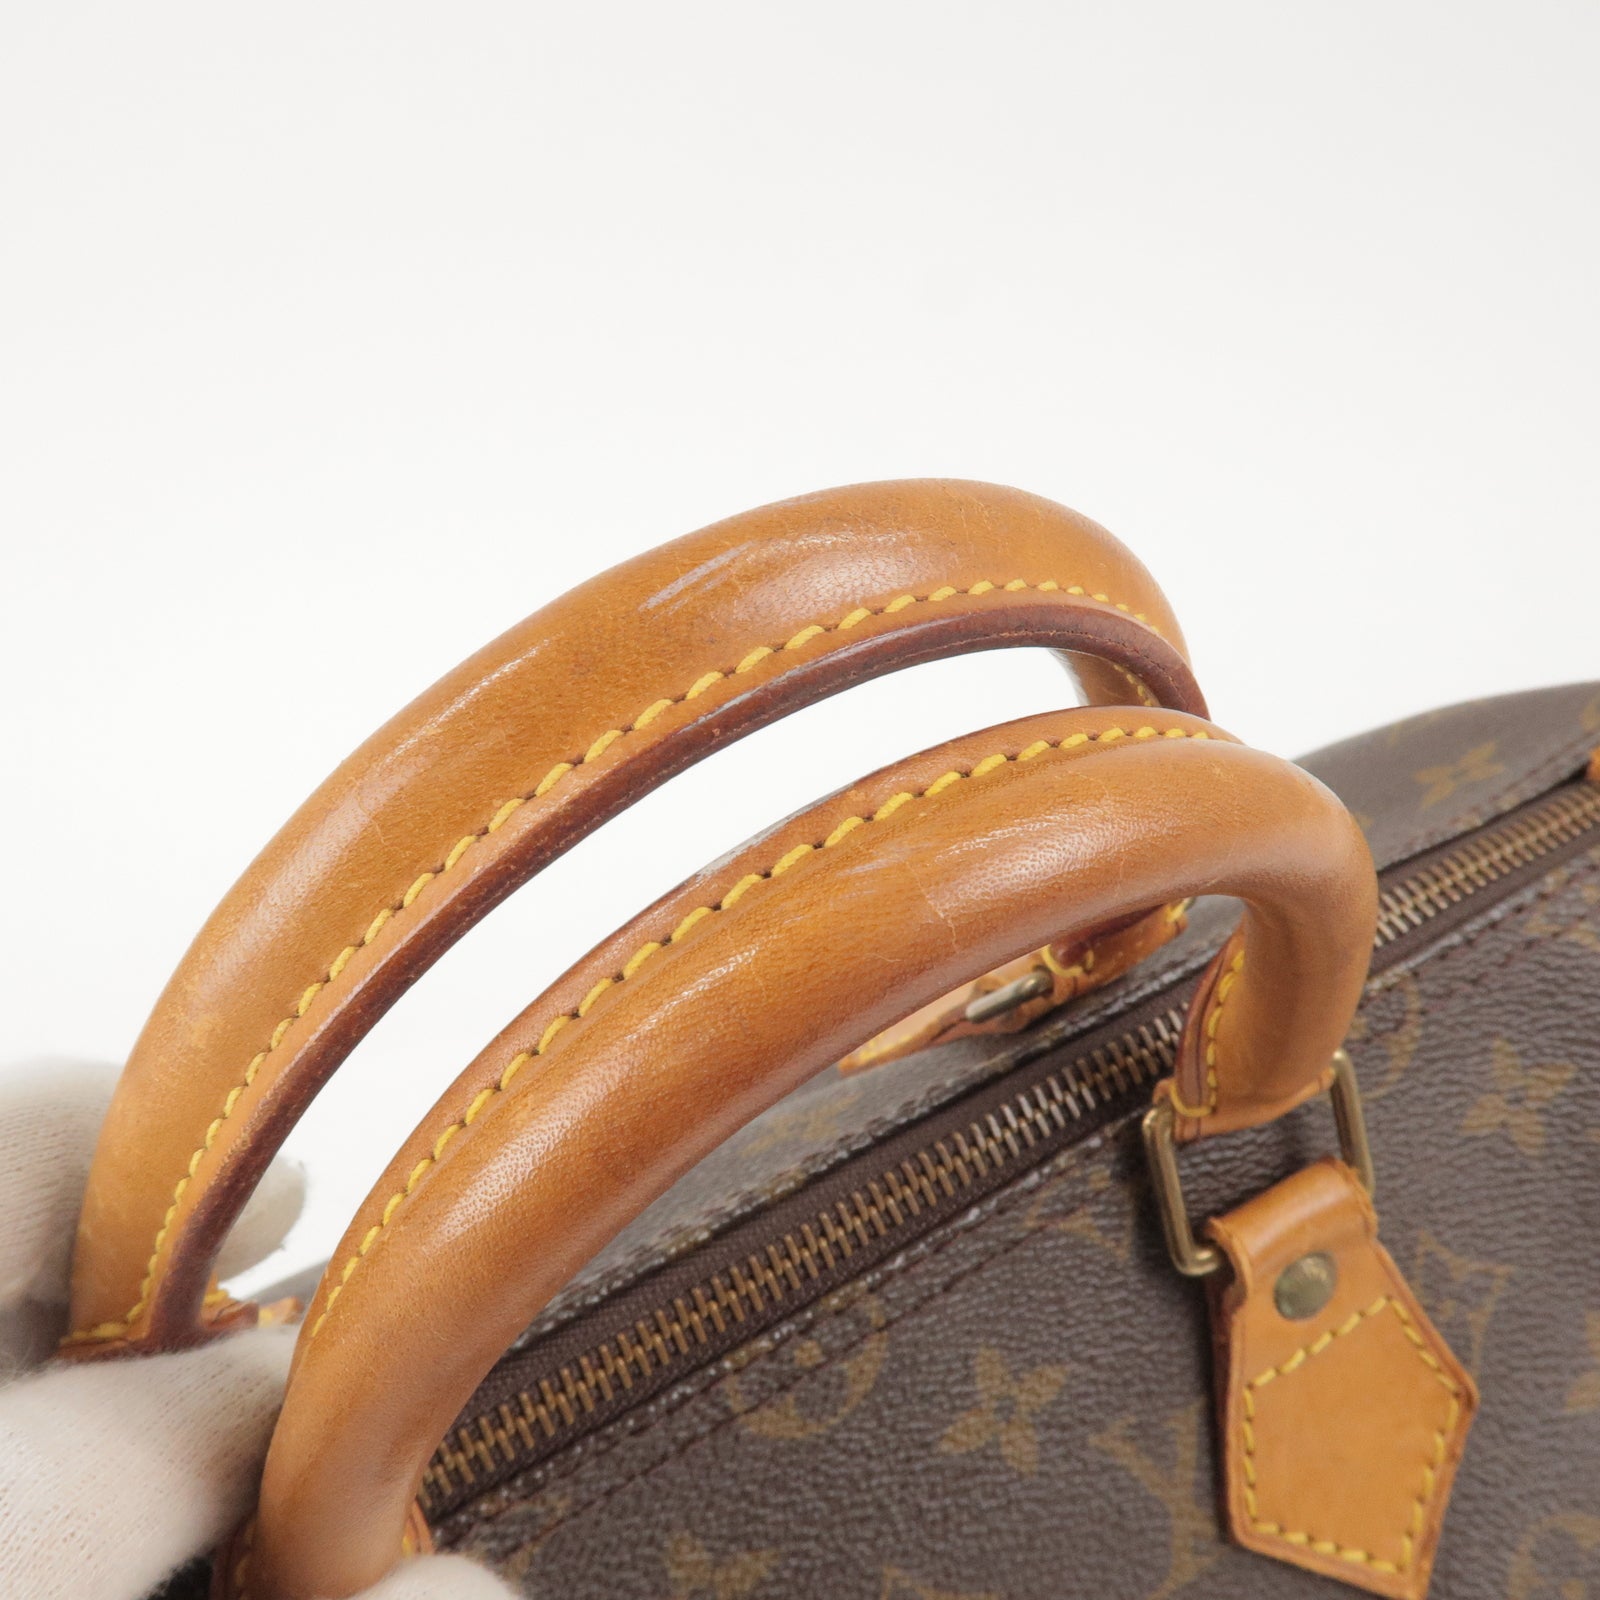 Bag - Precio de los bolsos Louis Vuitton Chantilly de segunda mano